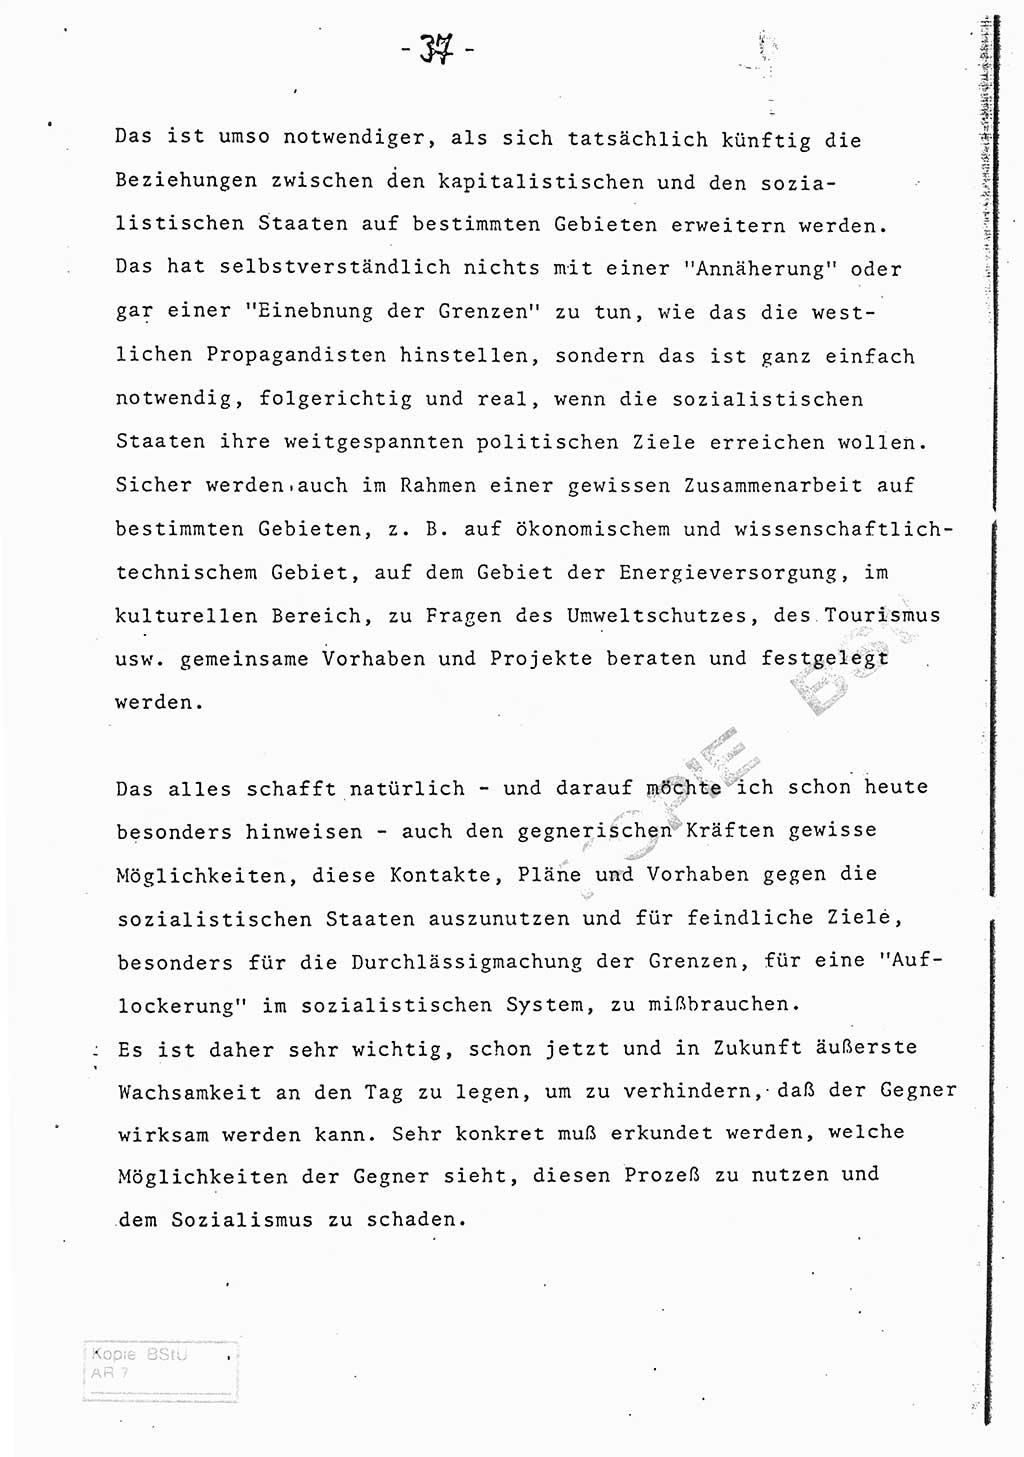 Referat (Entwurf) des Genossen Minister (Generaloberst Erich Mielke) auf der Dienstkonferenz 1972, Ministerium für Staatssicherheit (MfS) [Deutsche Demokratische Republik (DDR)], Der Minister, Geheime Verschlußsache (GVS) 008-150/72, Berlin 25.2.1972, Seite 37 (Ref. Entw. DK MfS DDR Min. GVS 008-150/72 1972, S. 37)